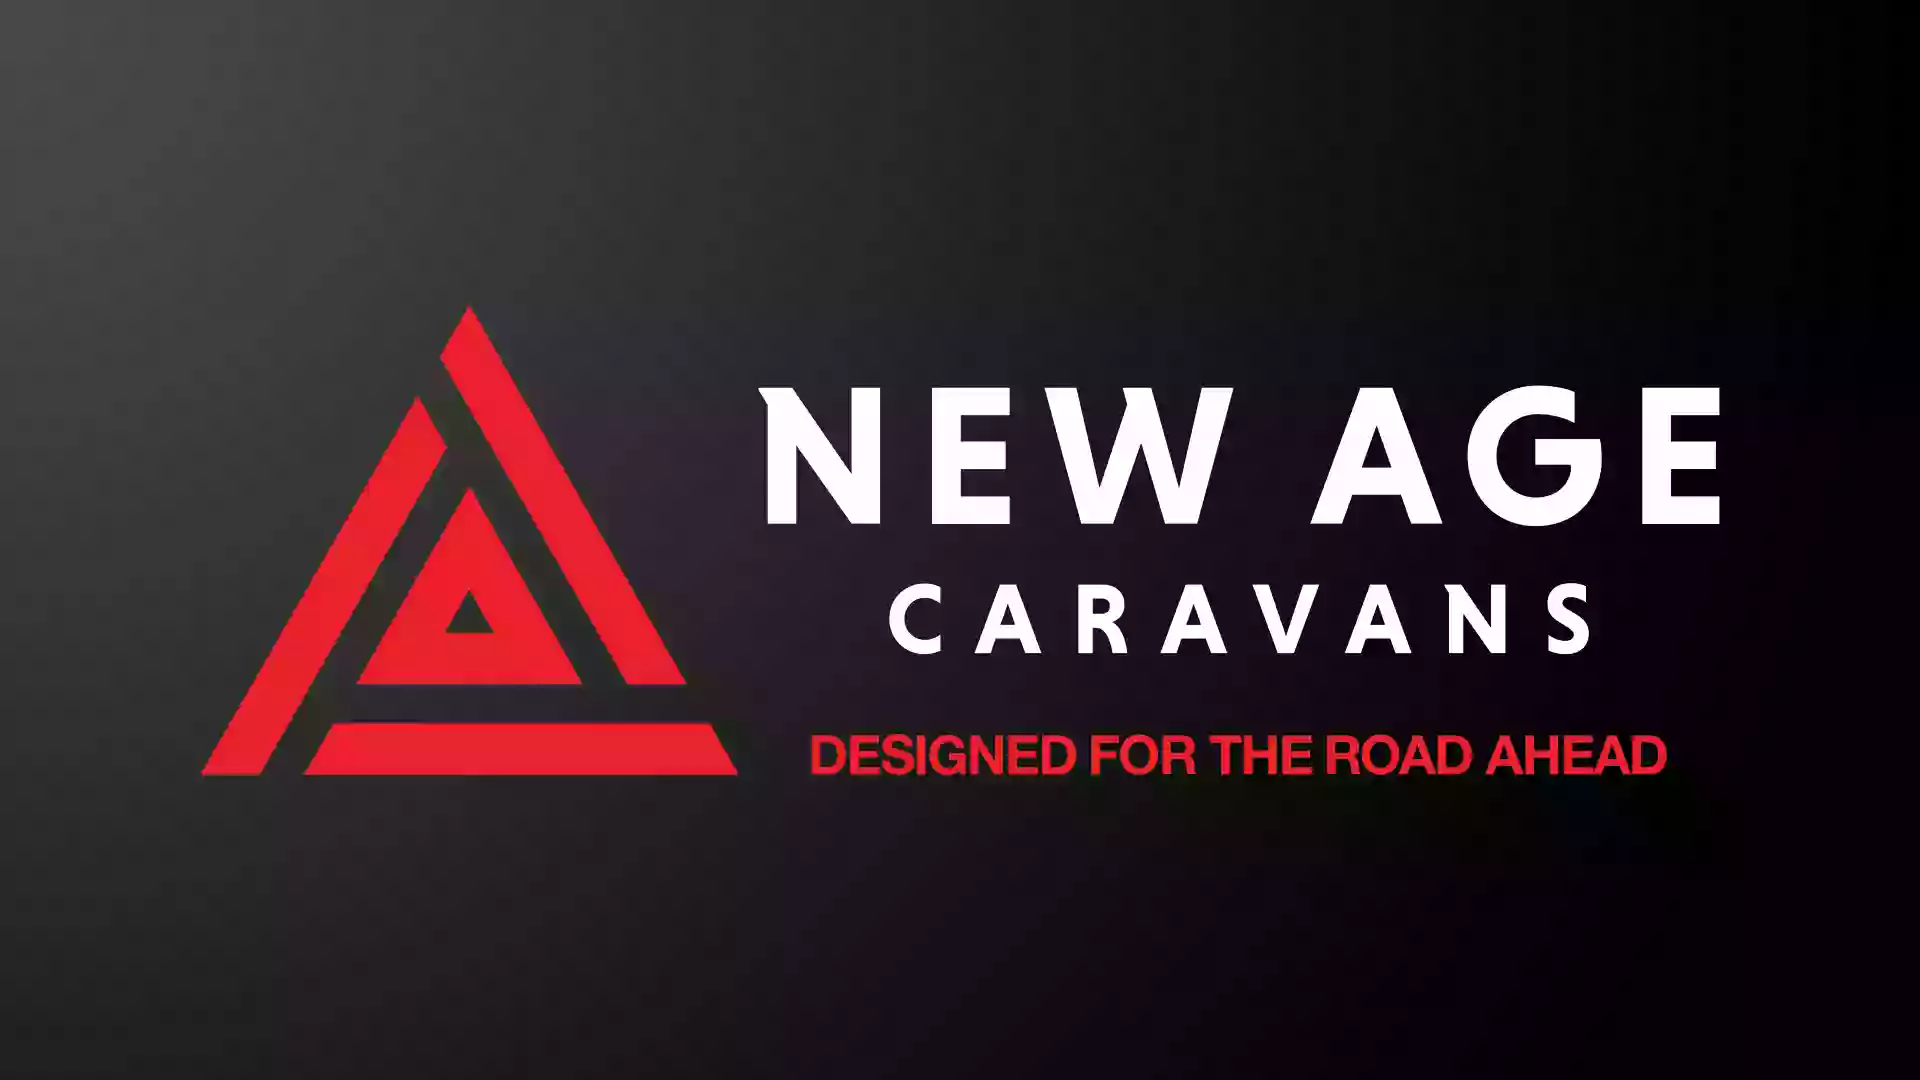 New Age Caravans Melbourne Service